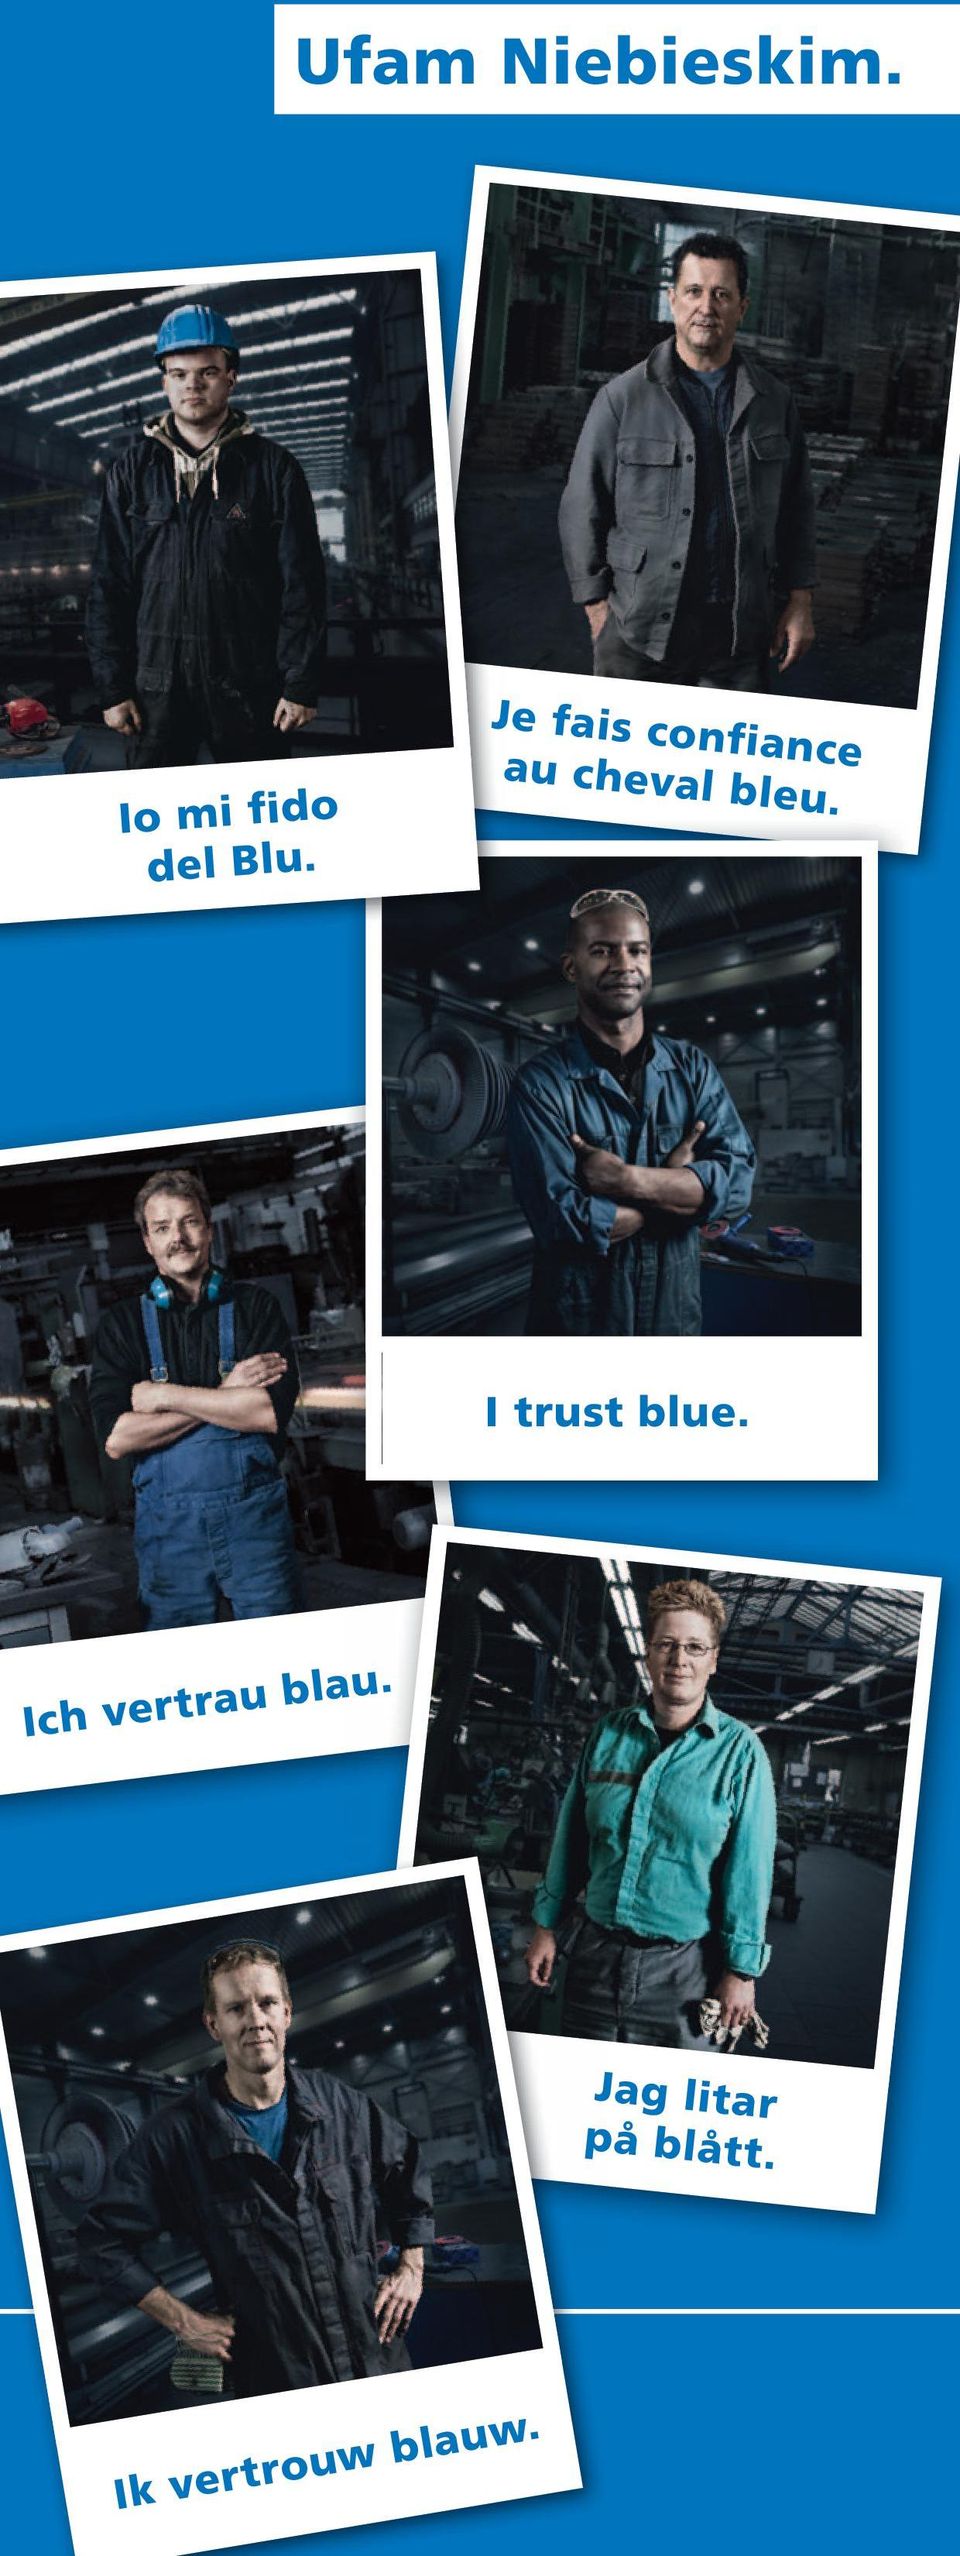 I trust blue. Ich vertrau blau.